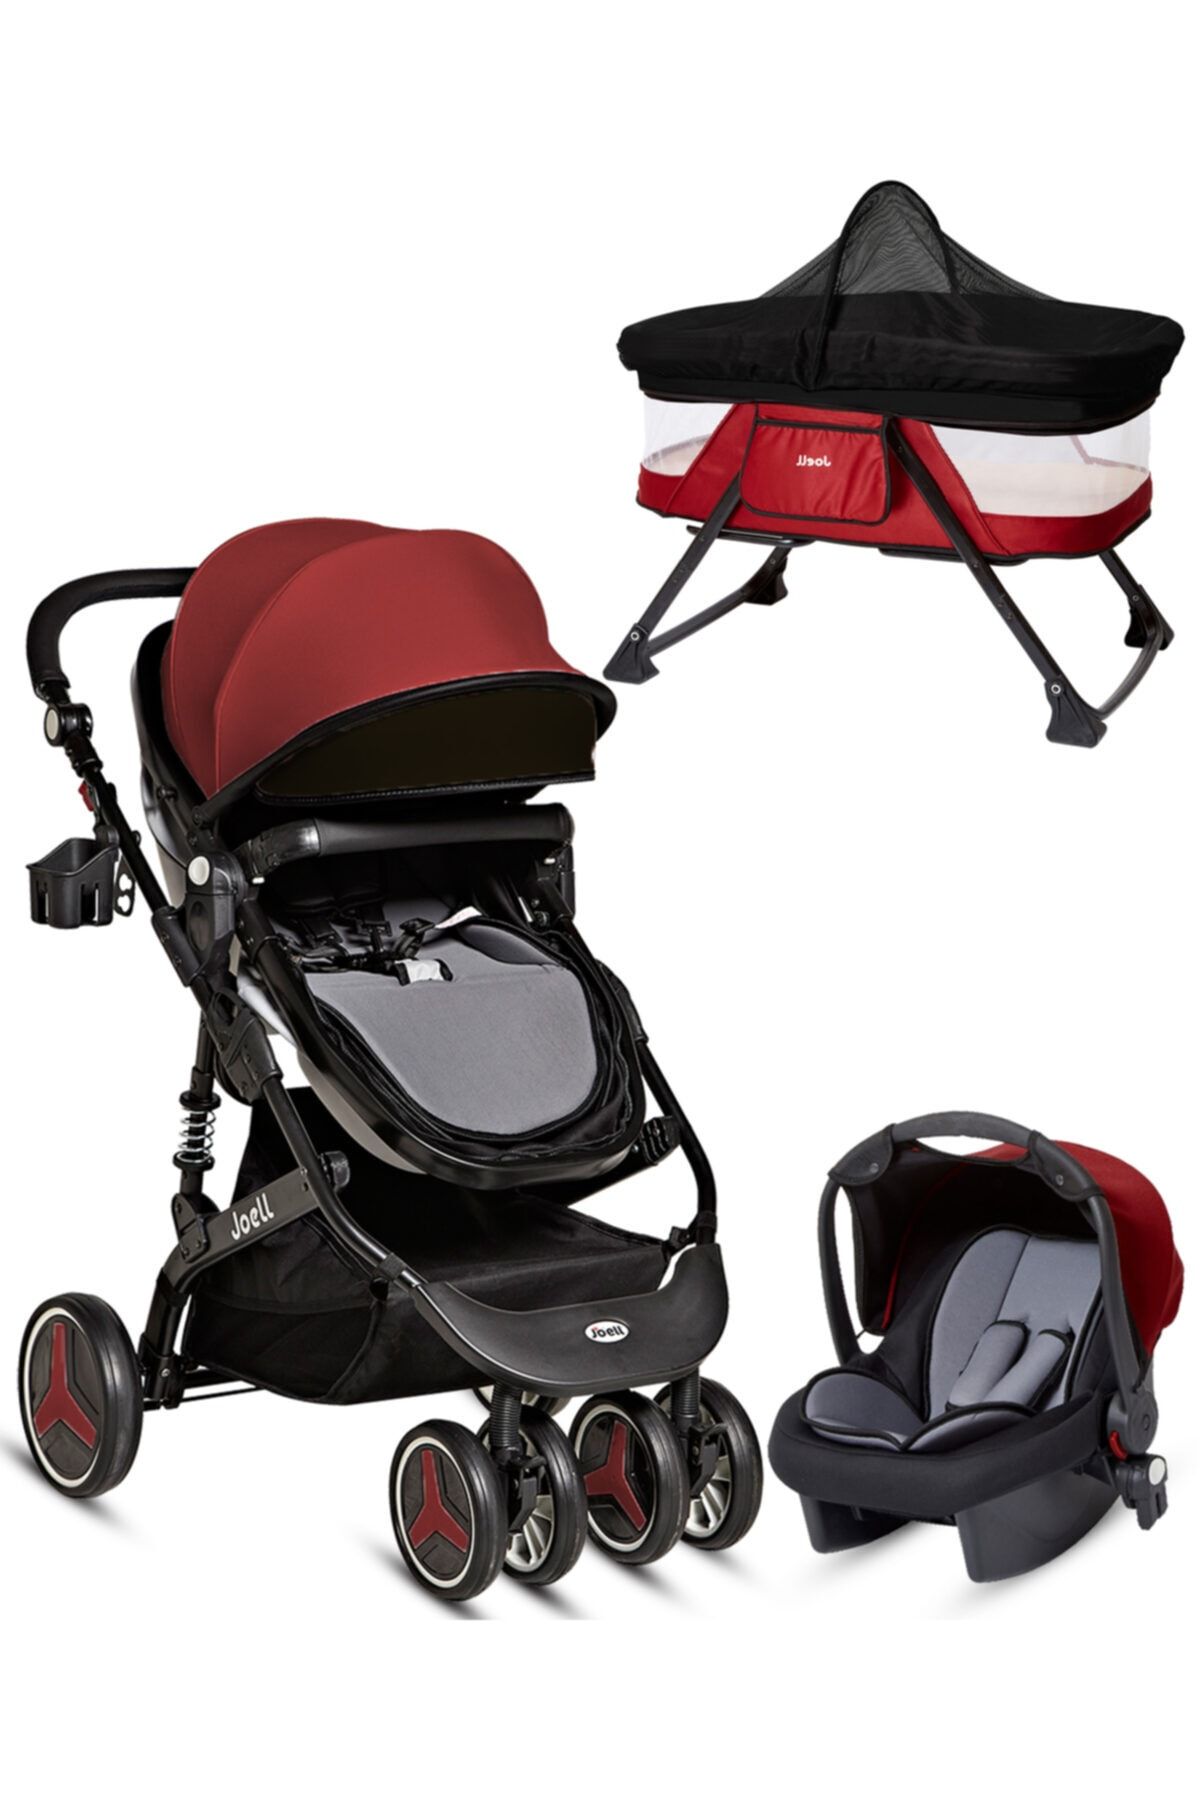 Baby Home Joell Jb-860 Travel Sistem Bebek Arabası Puset Ve Anne Yanı Bebek Sepeti Sepet Beşik